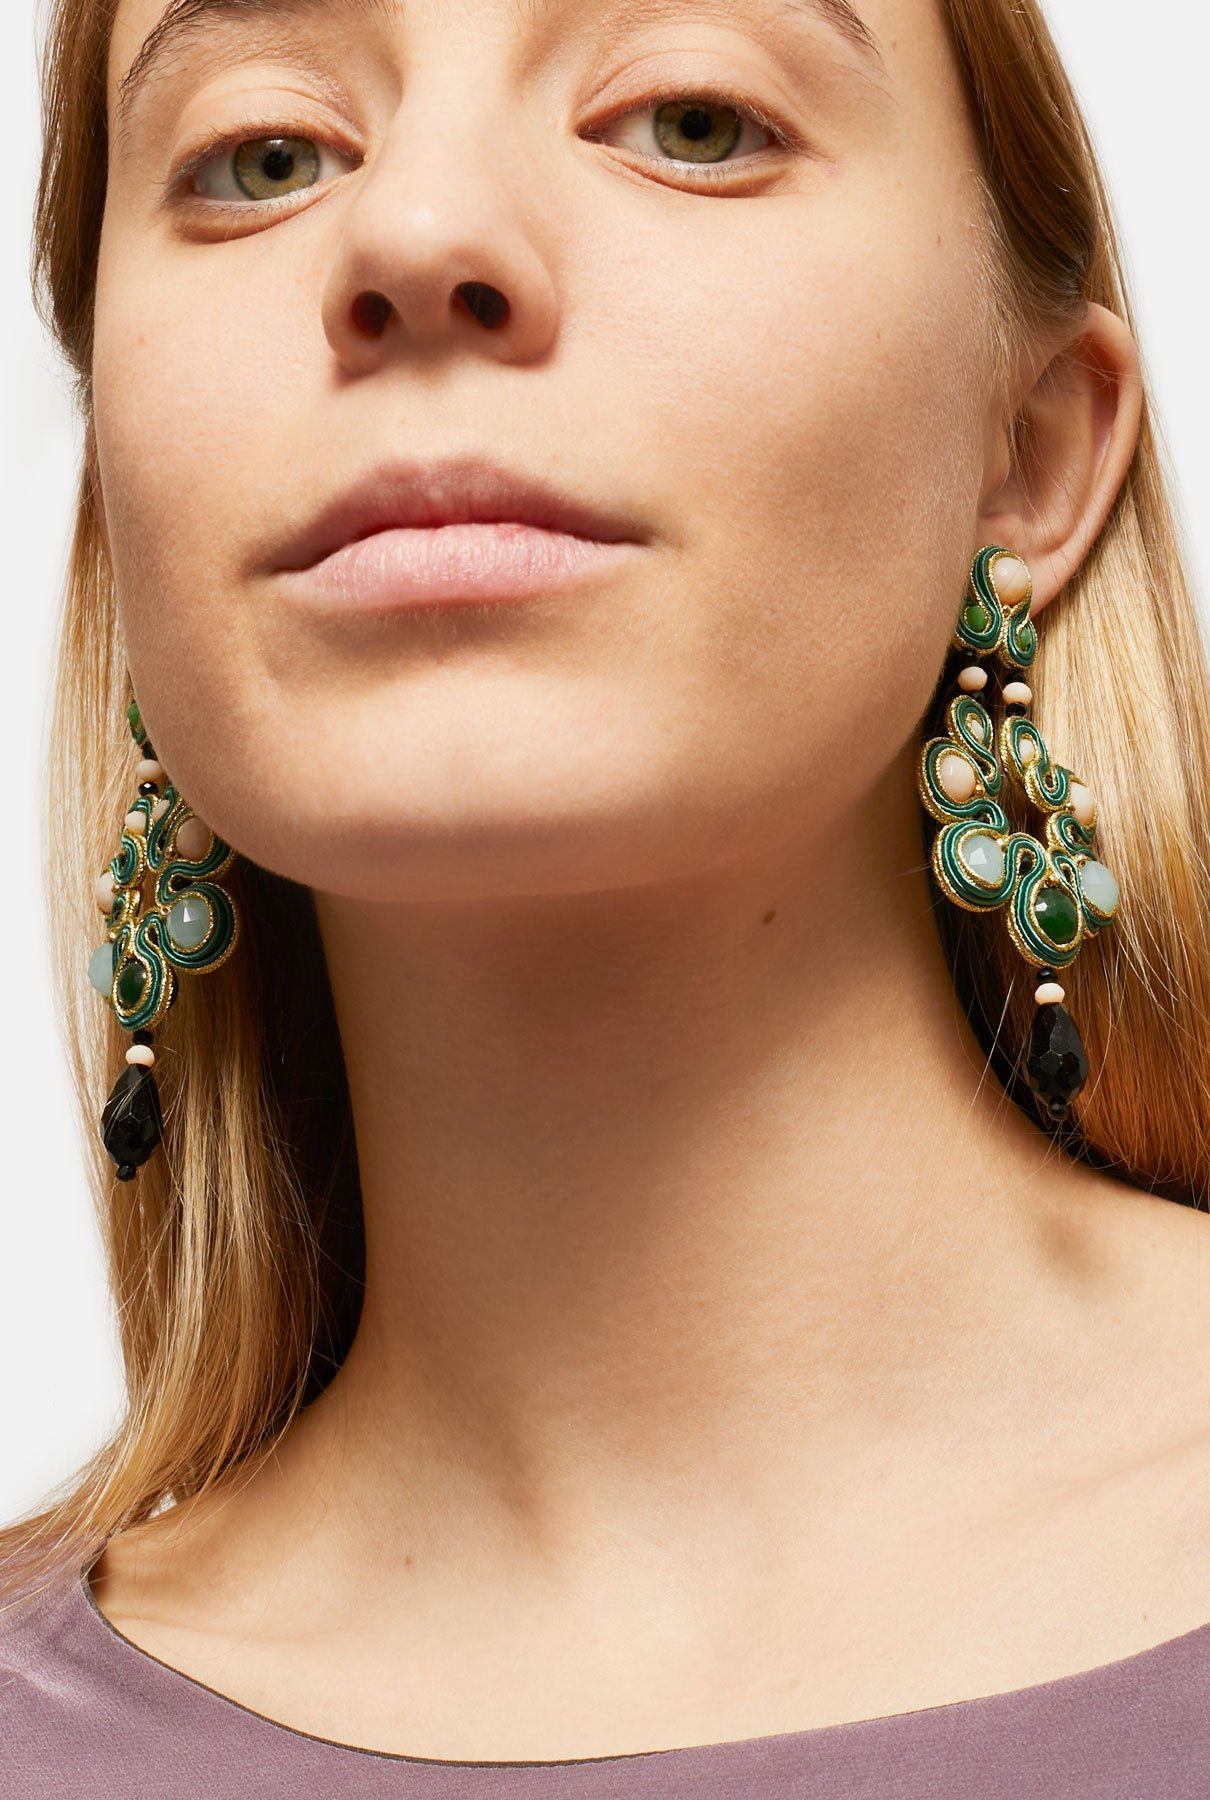 Marie Antoinette Pompadour Earrings earring Musula Jewels 